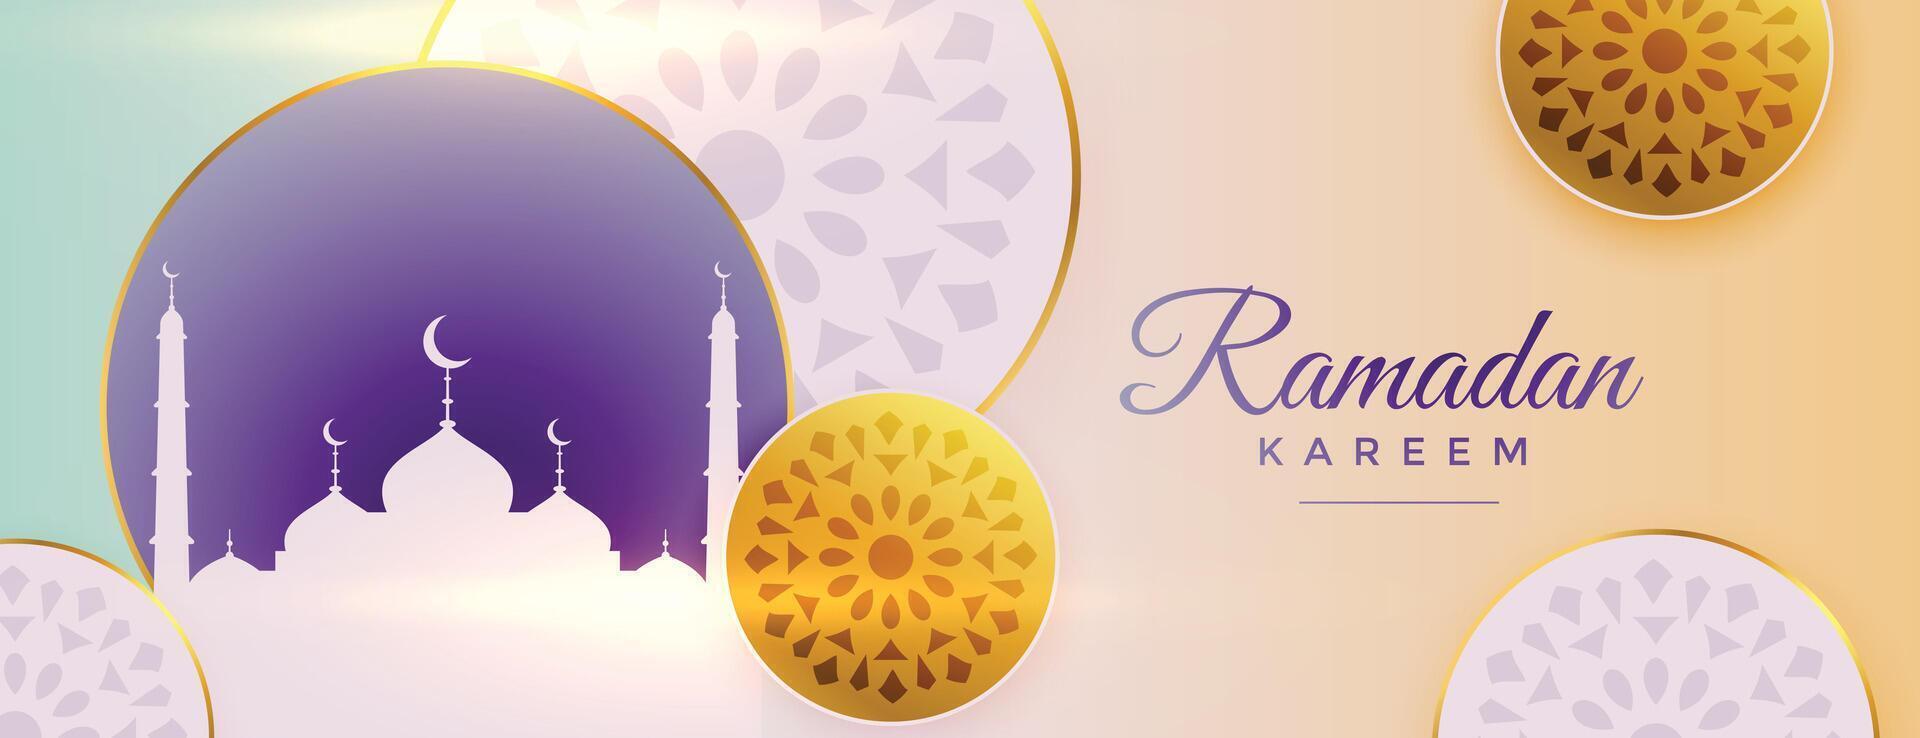 arabicum dekorativ ramadan kareem skön baner design vektor